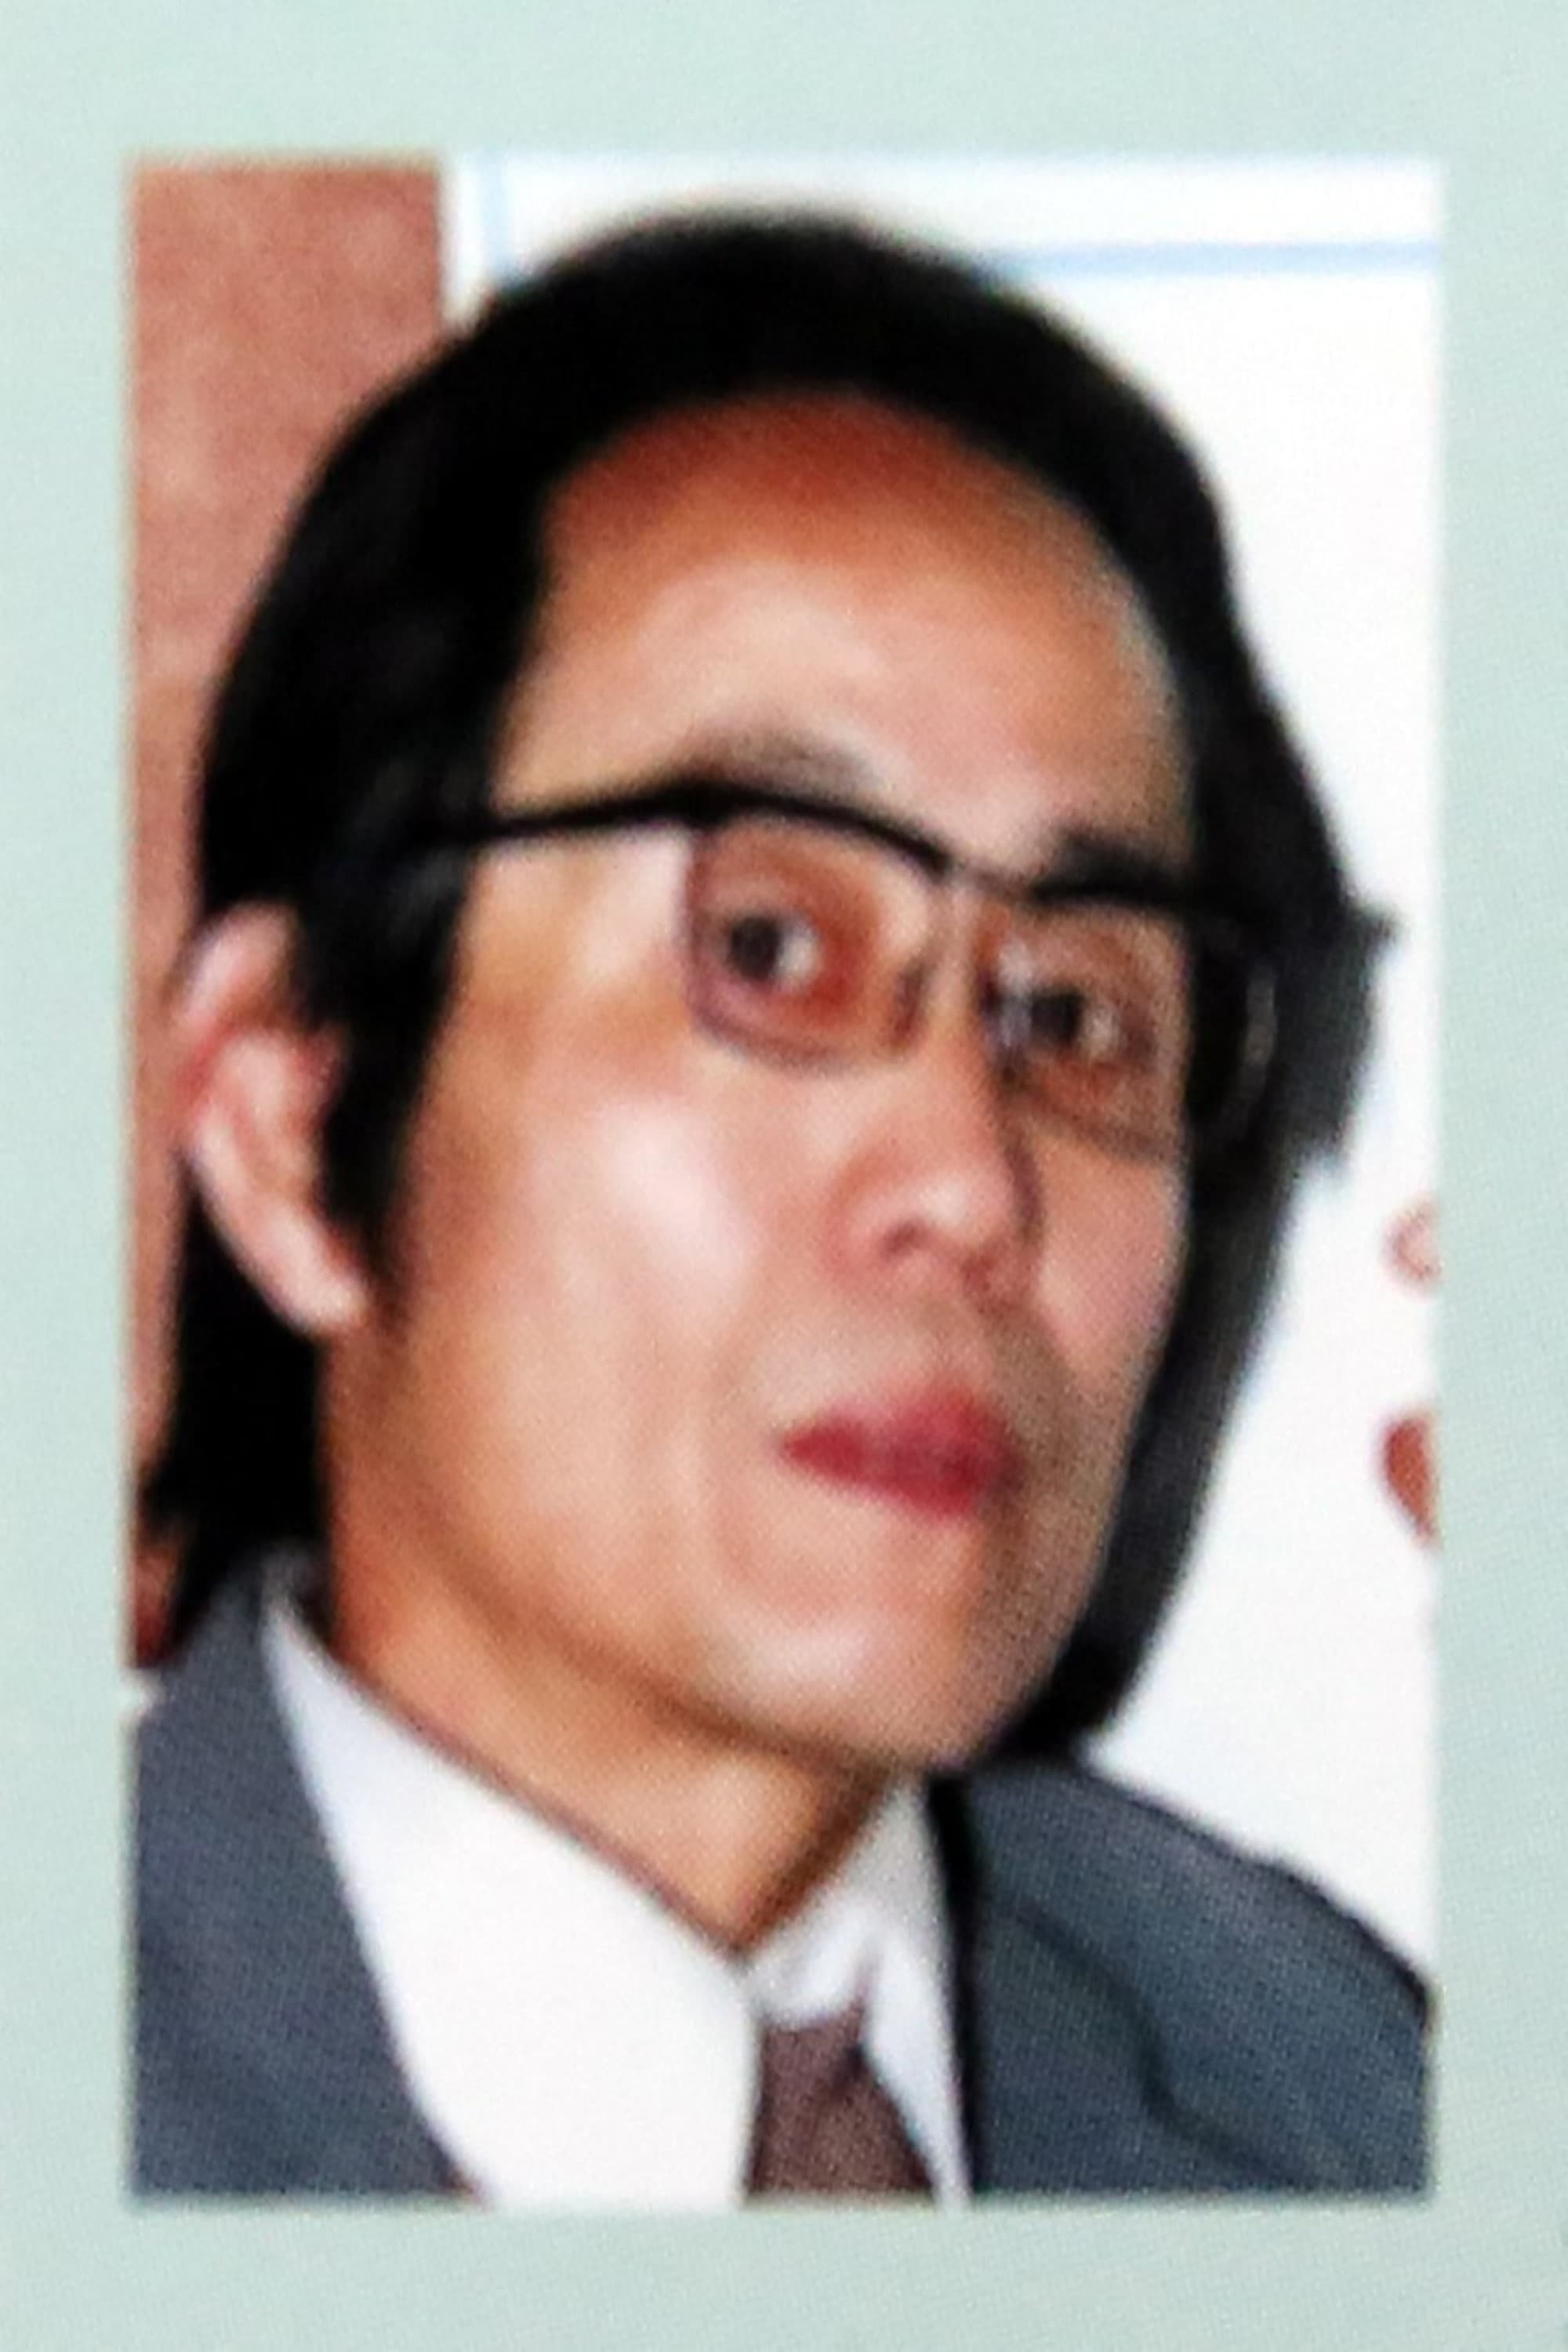 Li Yundong